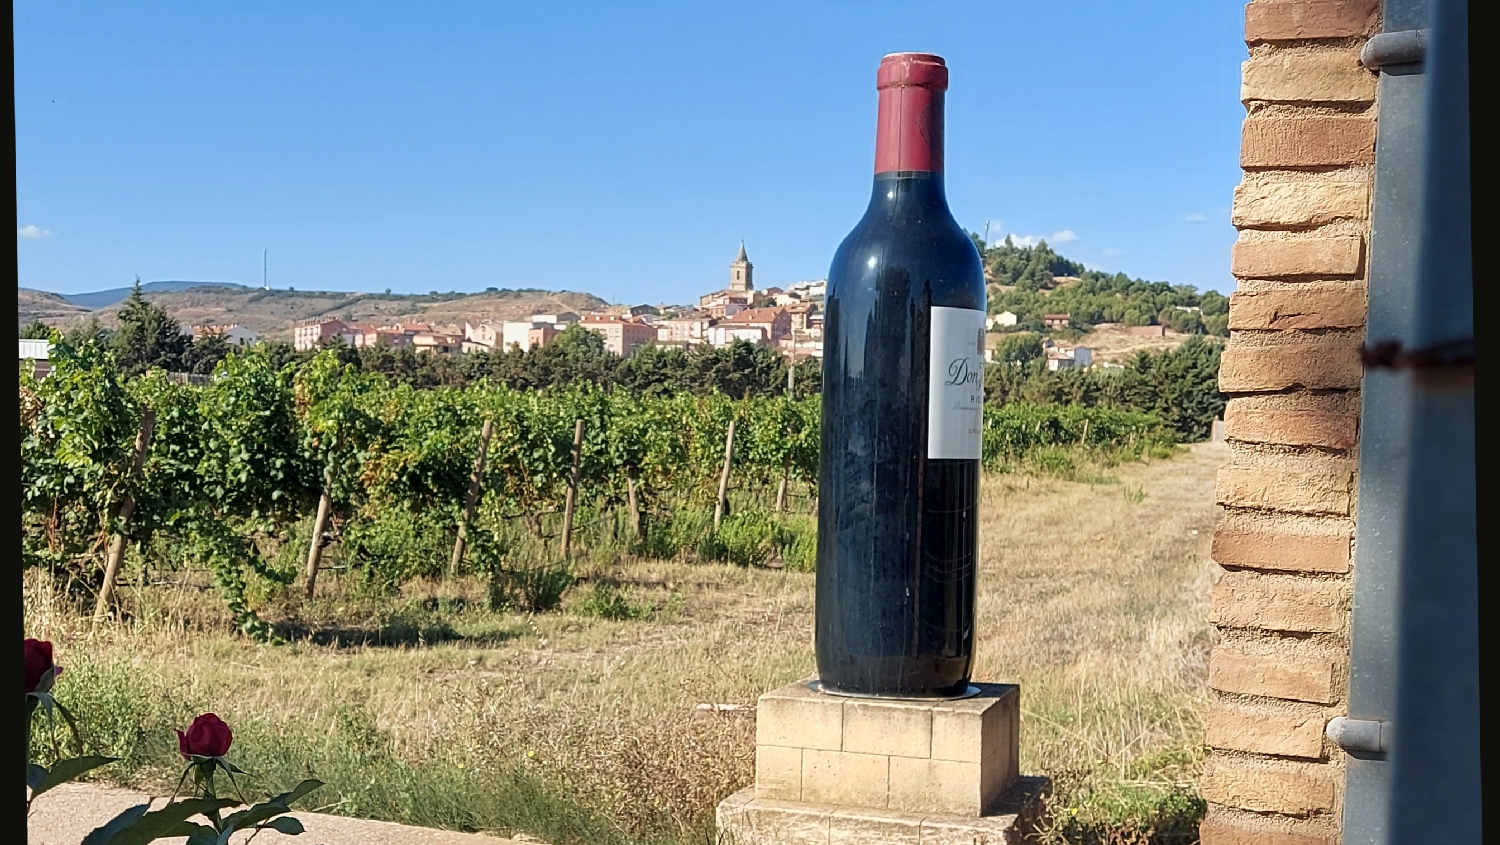 El Camino, Francia út, Don Jacobo borászat és egy hatalmas borosüveg Navarrete előtt